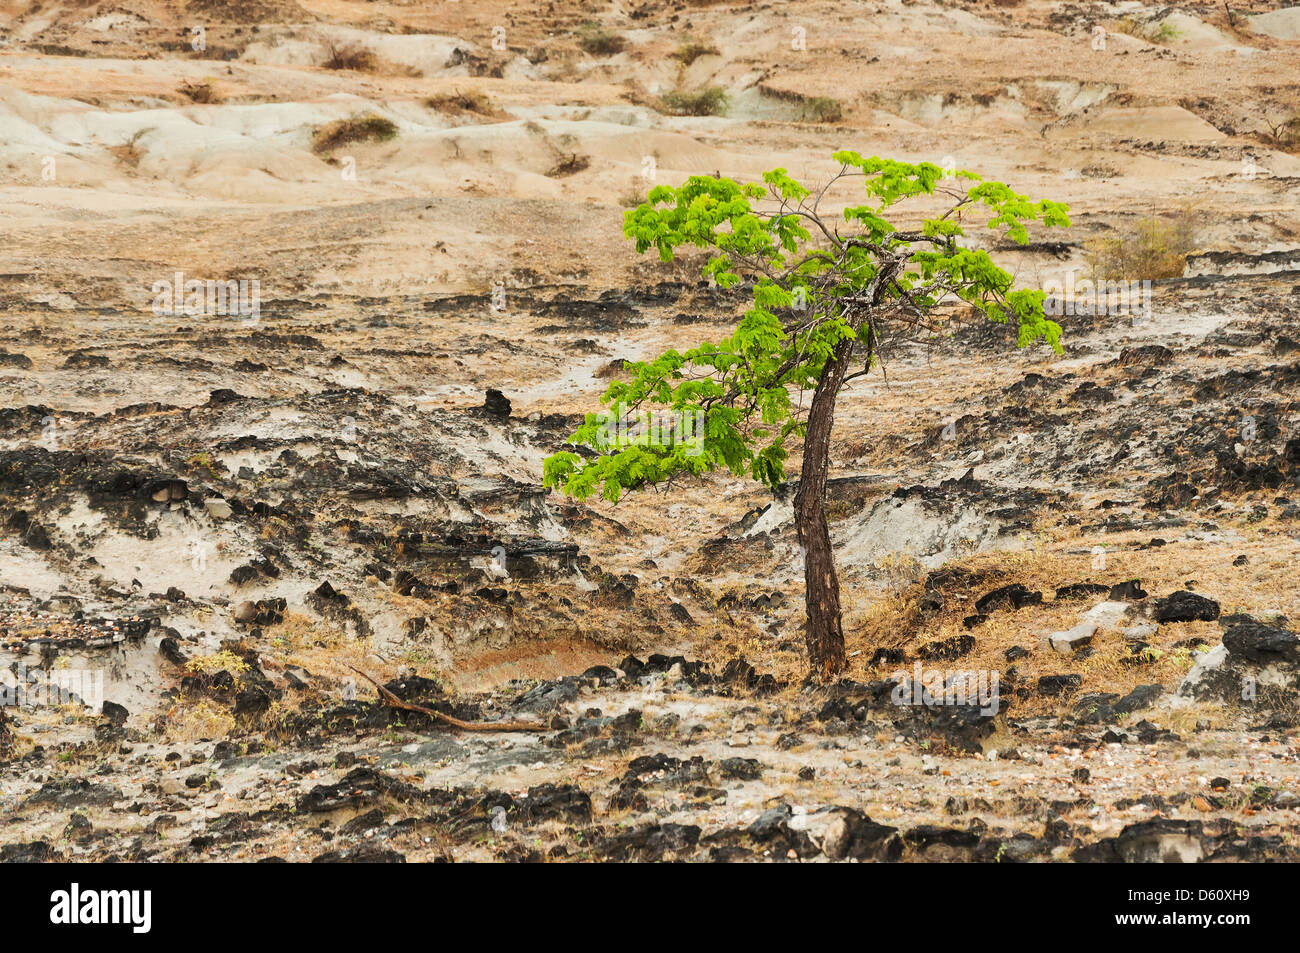 Una bella e verde albero che cresce in un deserto desolato deserto Foto Stock